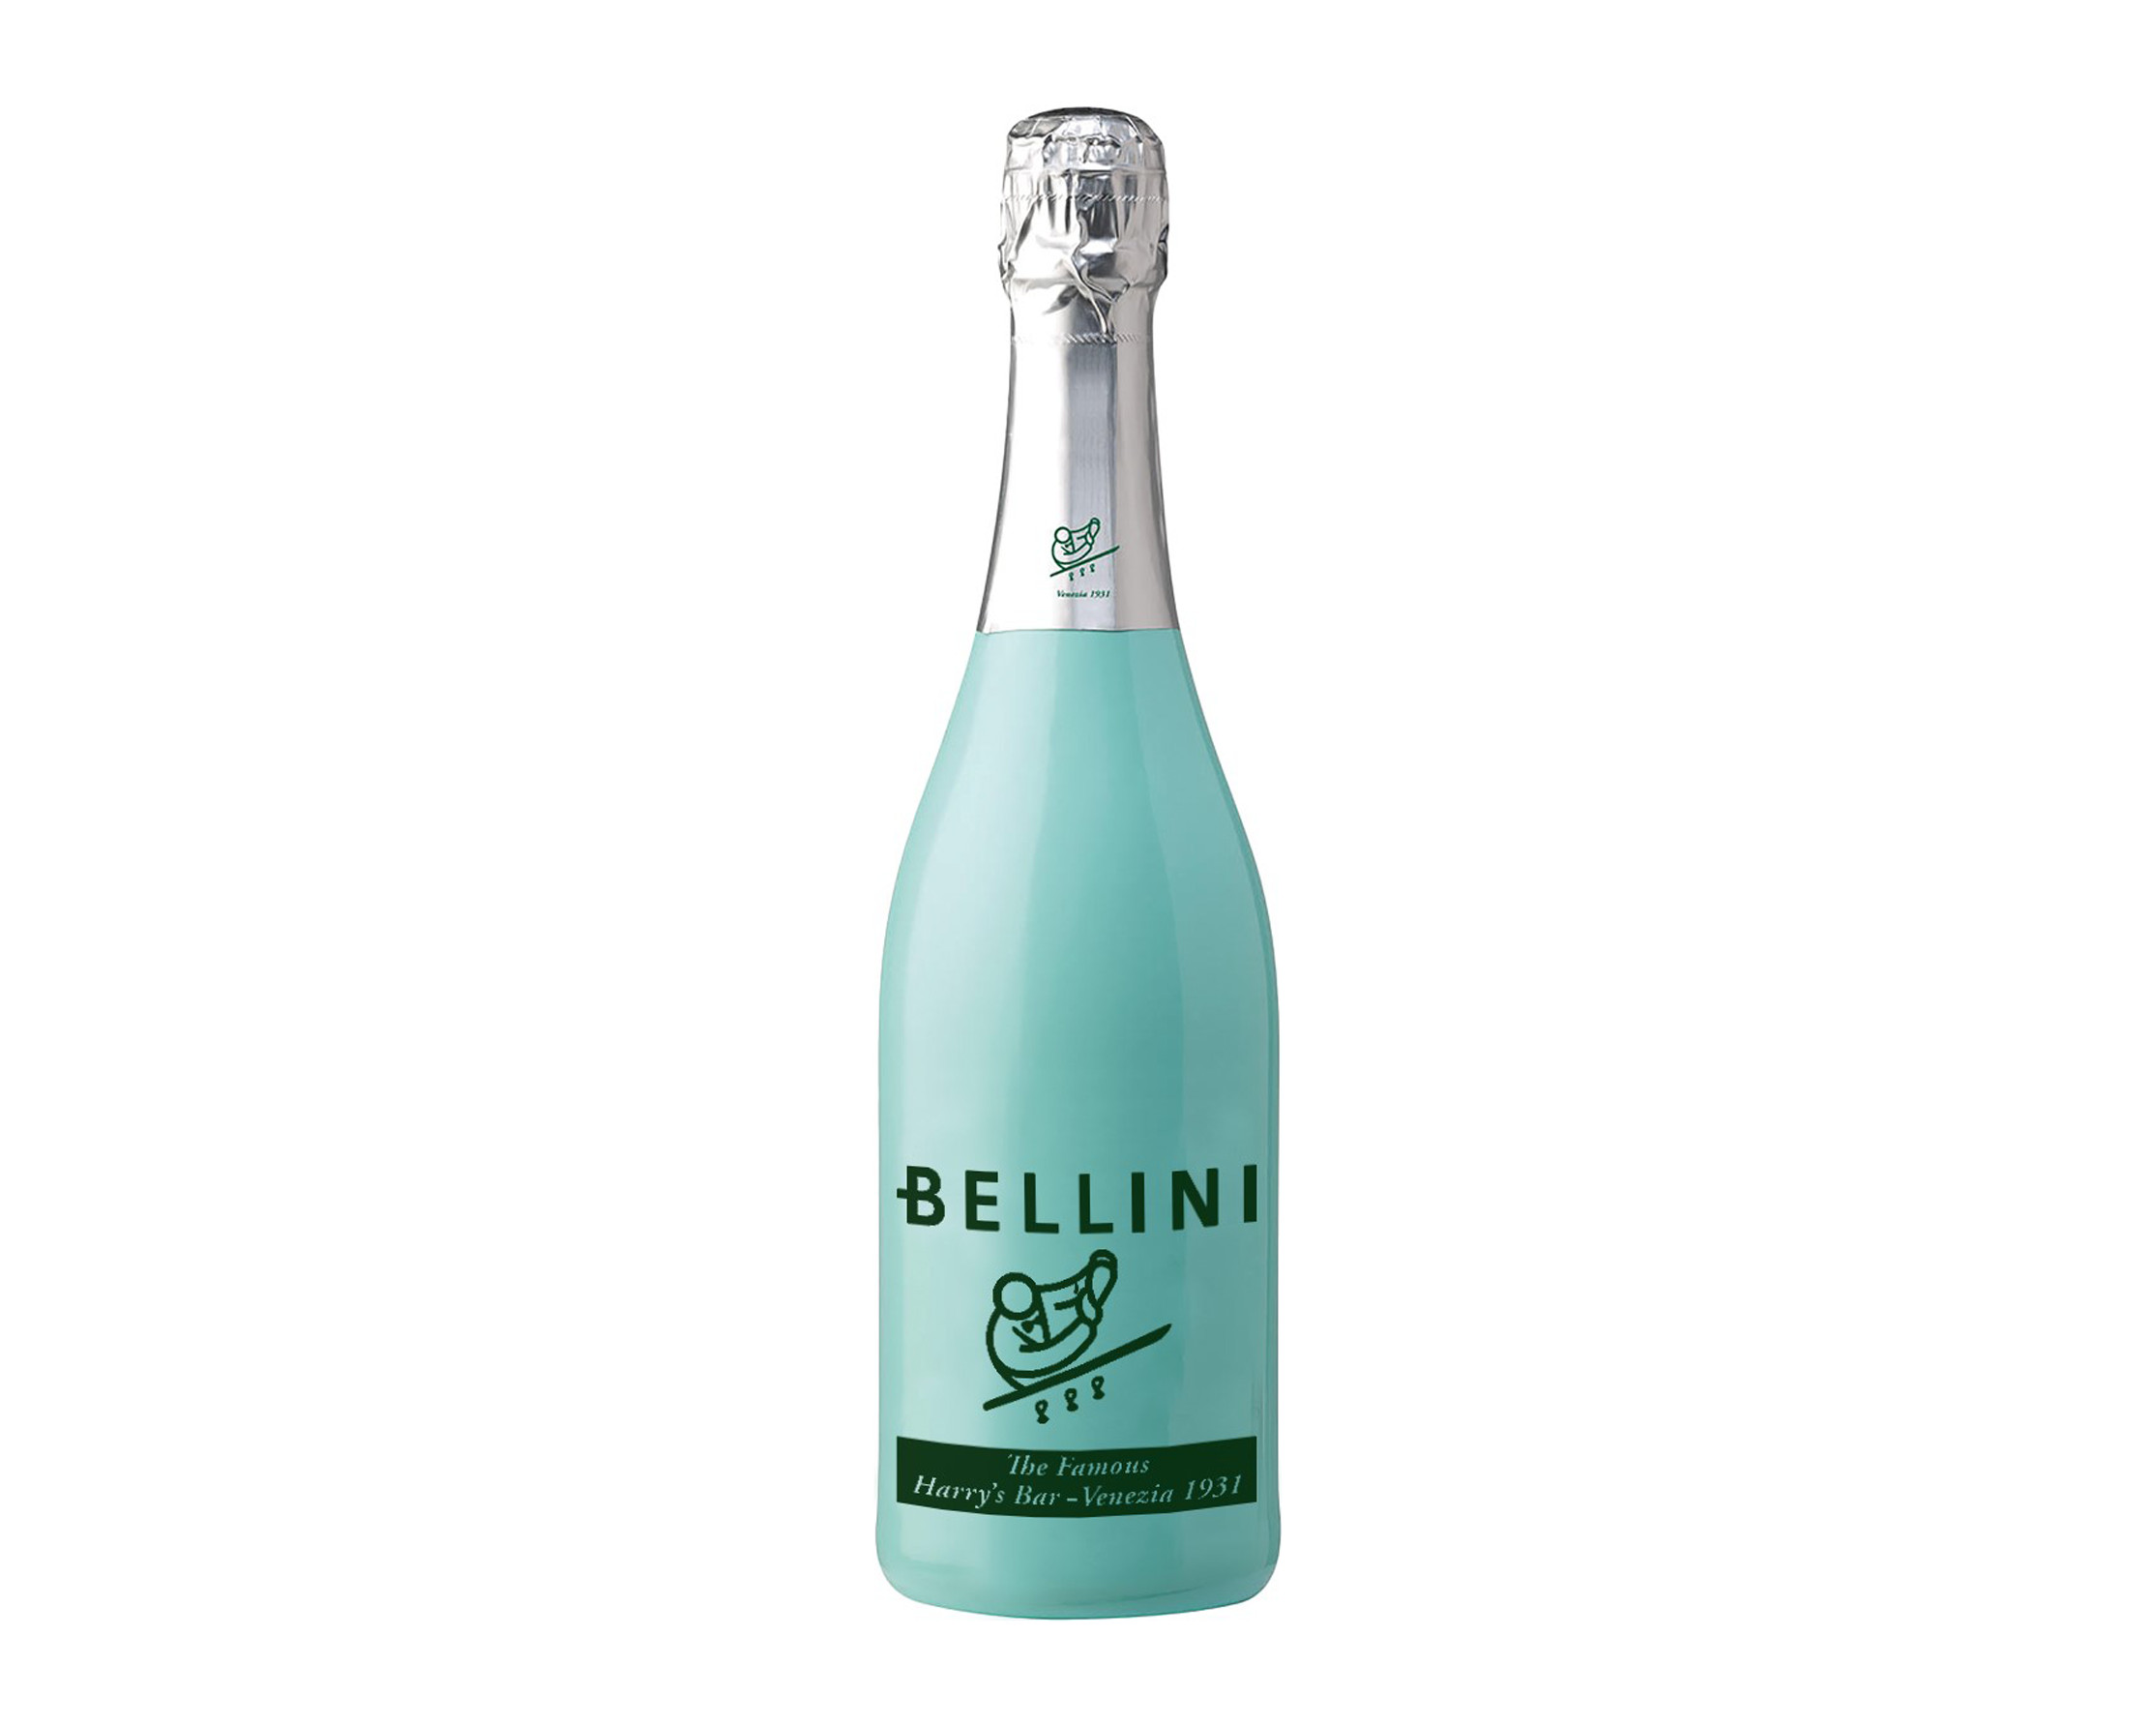 La Tua Pasta Bellini Cipriani 5.5% Vol. (750ml Bottle)